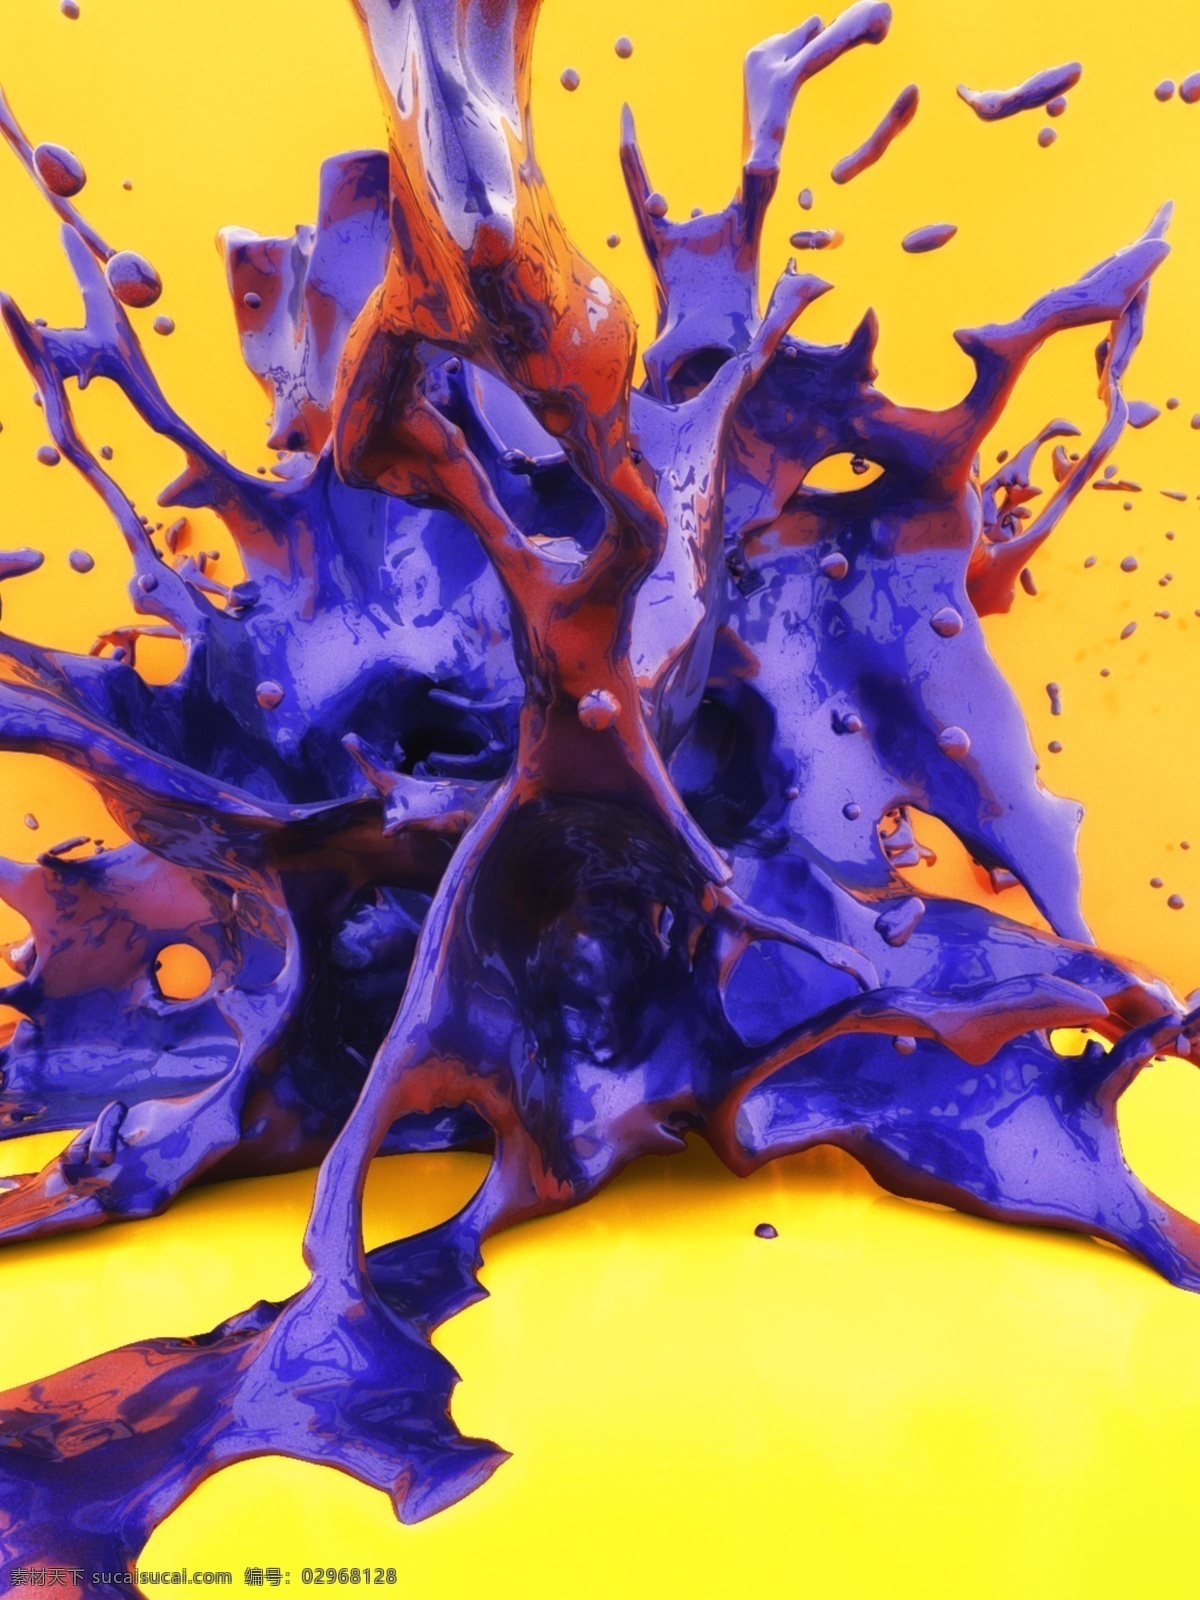 全 原创 街头 嘻哈 风格 液体 动态 感 3d 创意 背景 紫色 泼溅 画面 油漆 油墨 金属漆 骑车 珍珠漆 商务风 个性 涂鸦 c4d